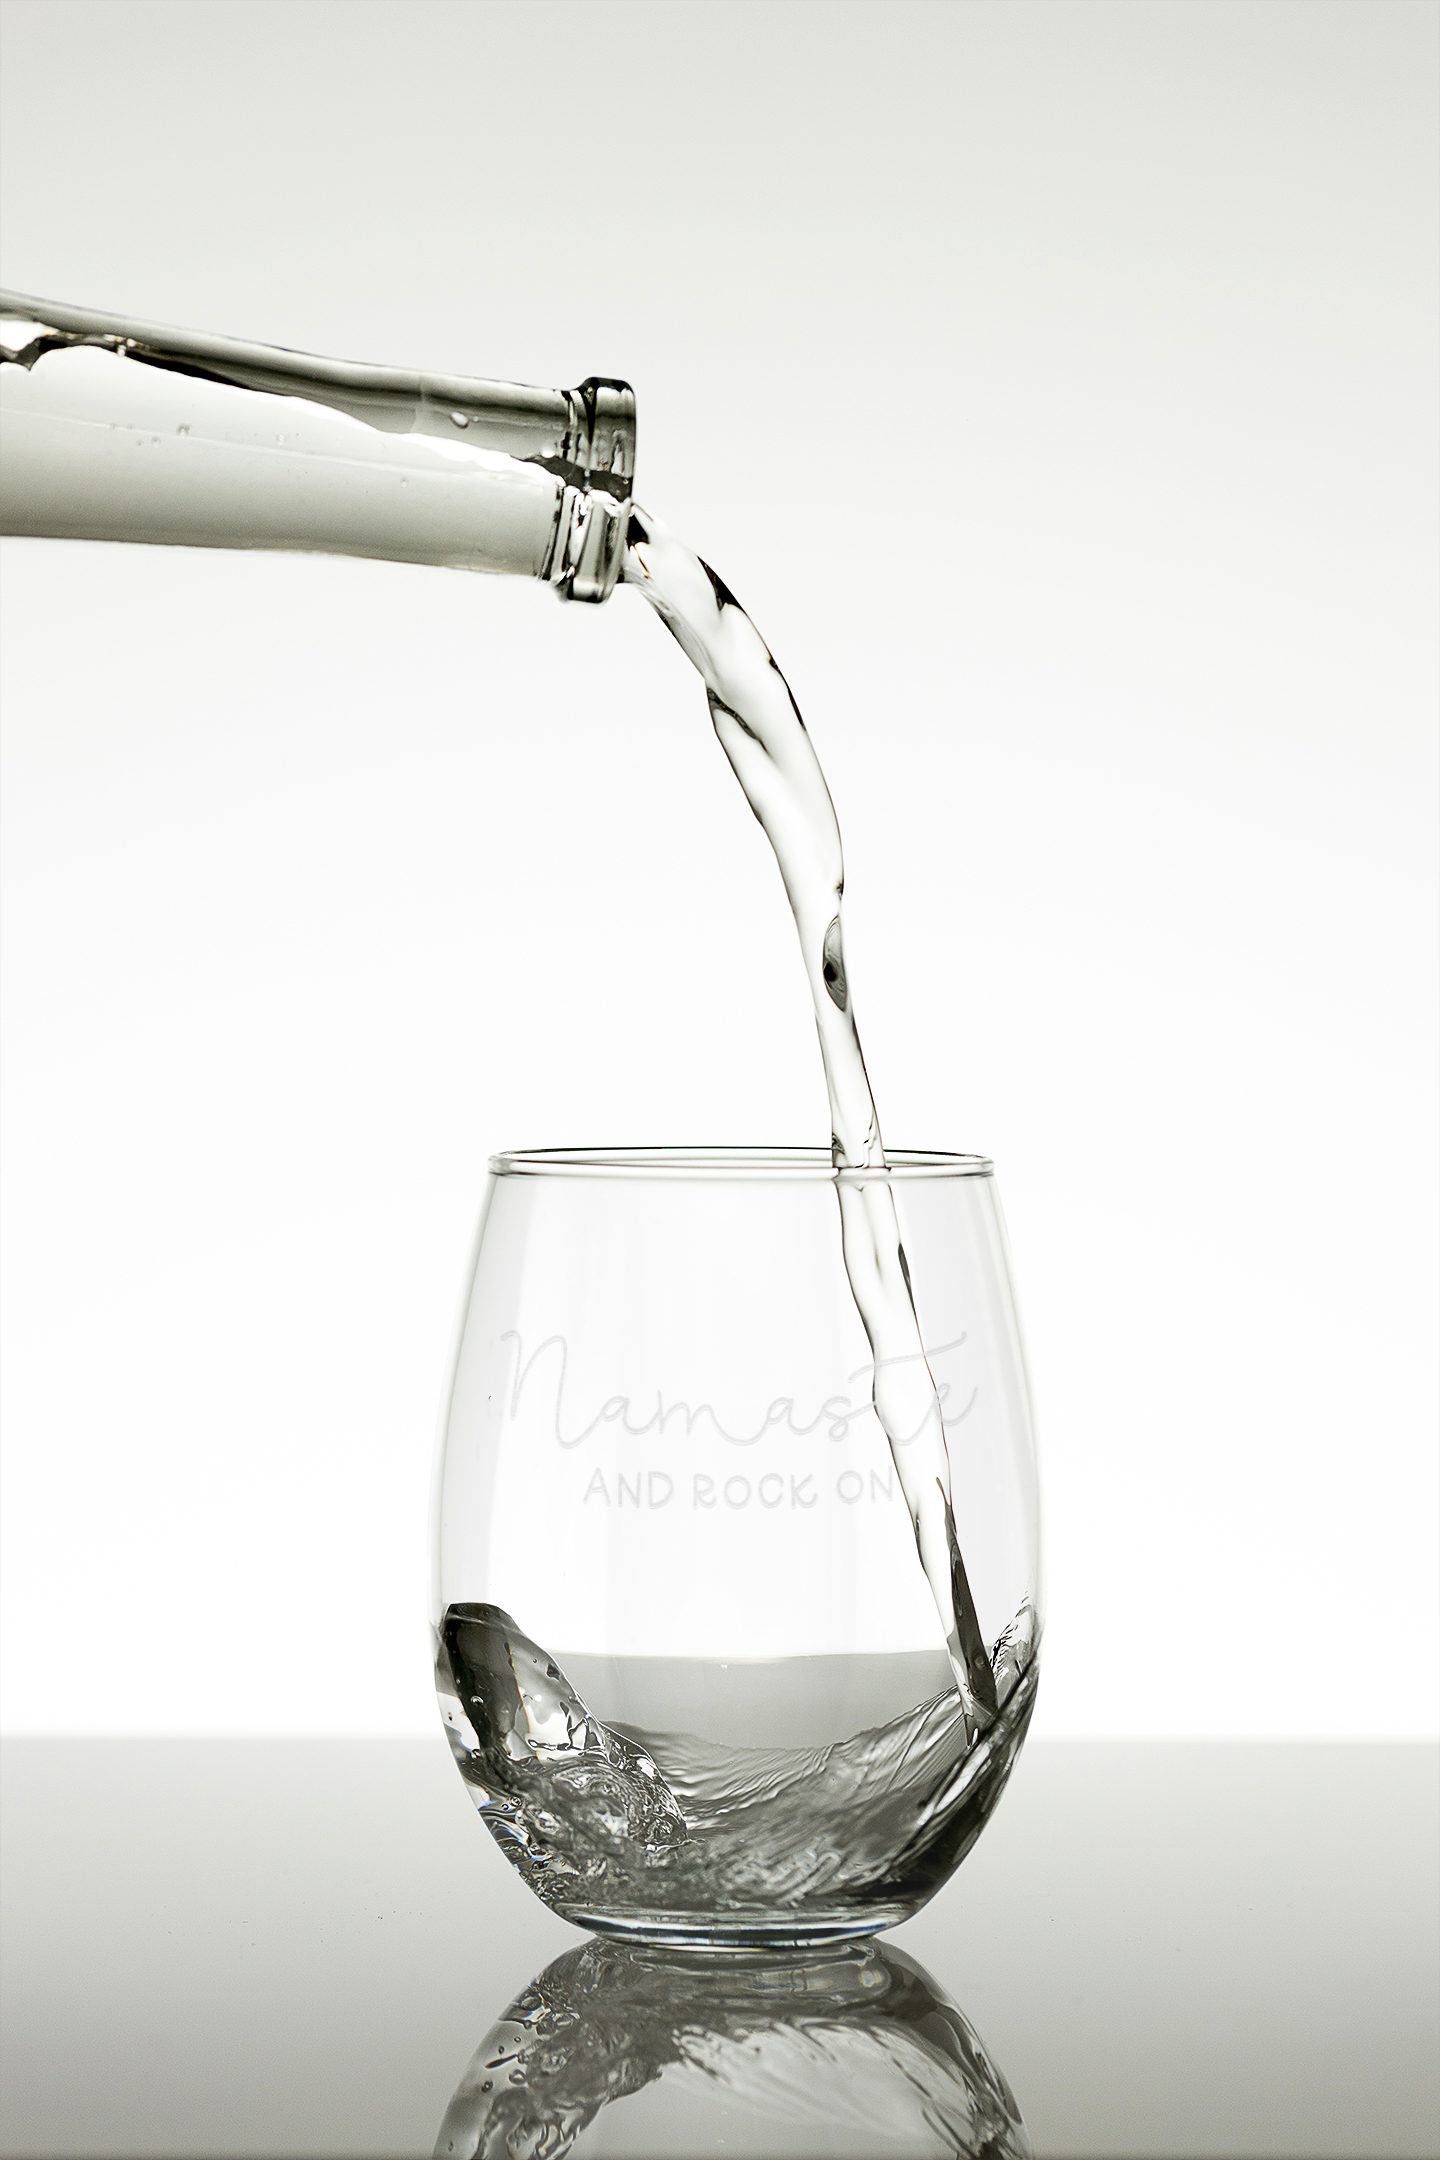 Trinkglas "Namaste AND ROCK ON" mit hochwertiger Gravur